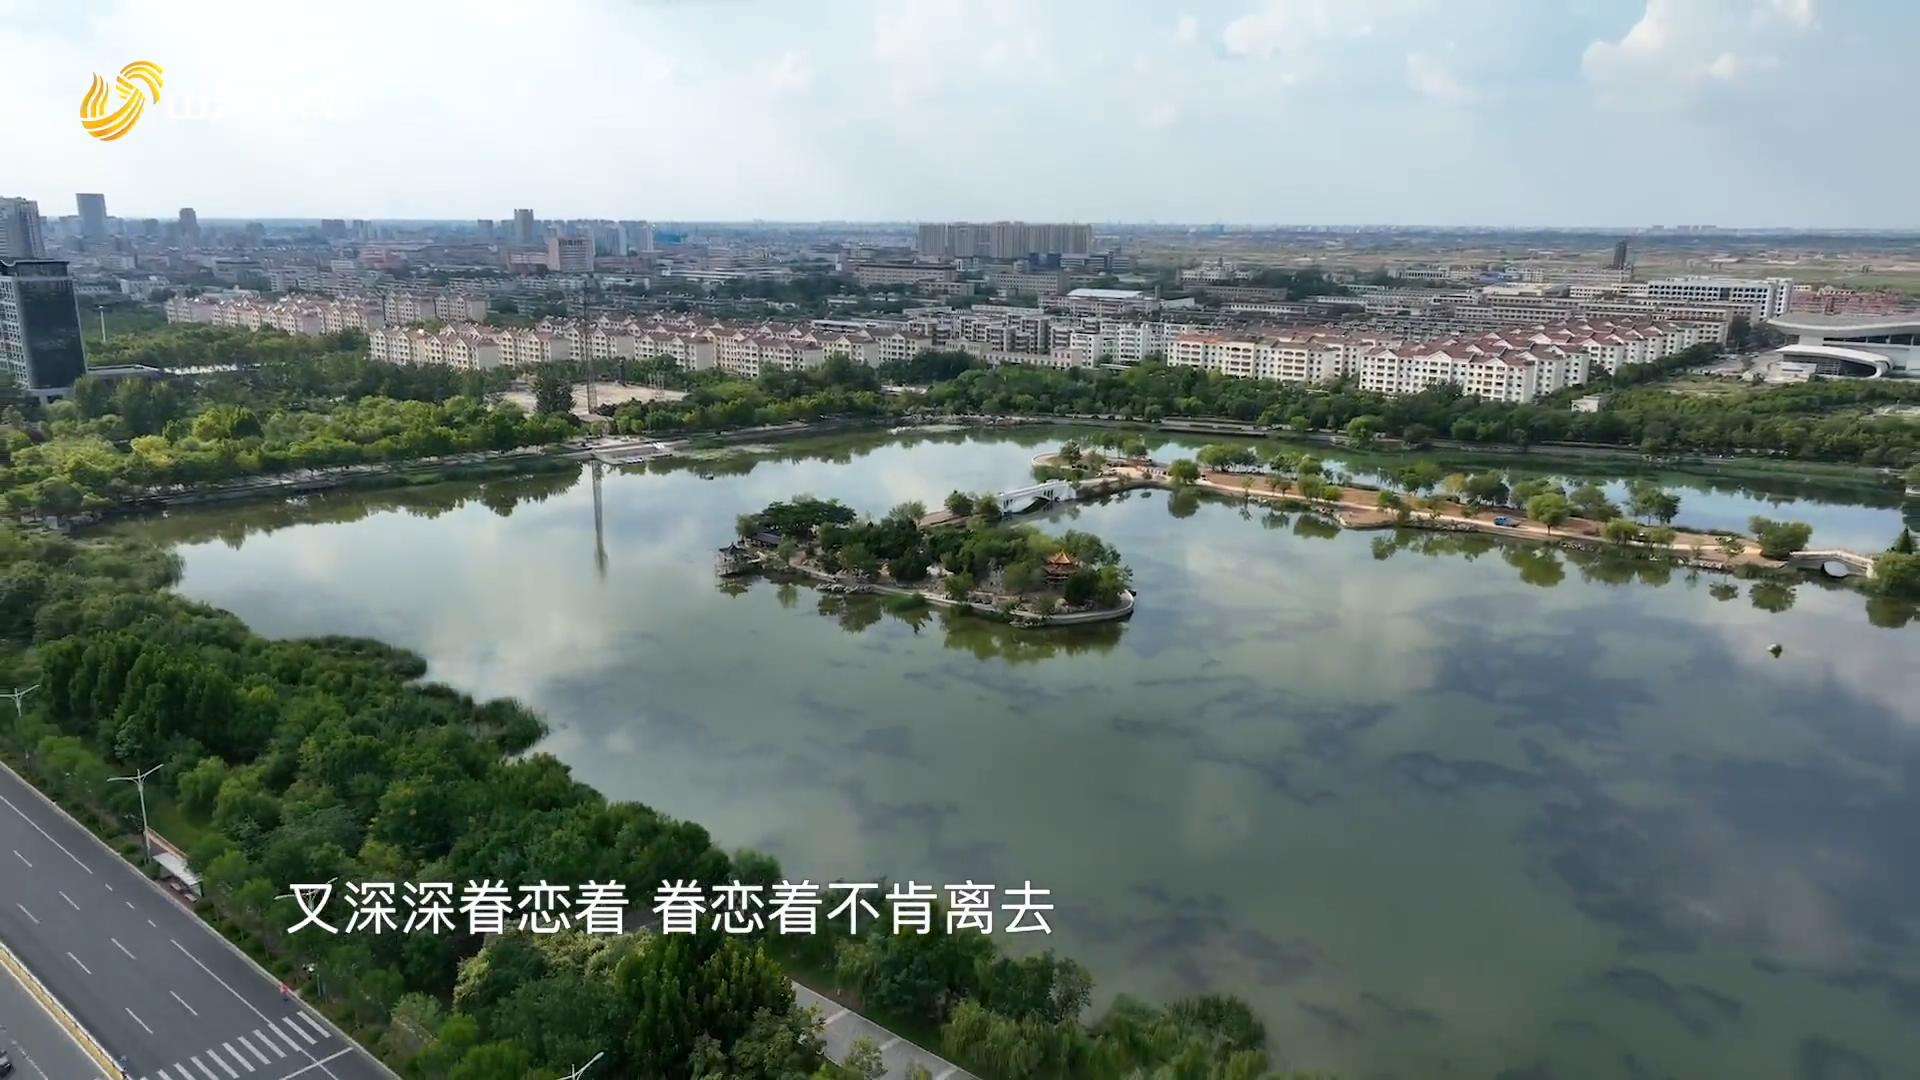 纪录片《为中国加油》第二集《最新大陆》